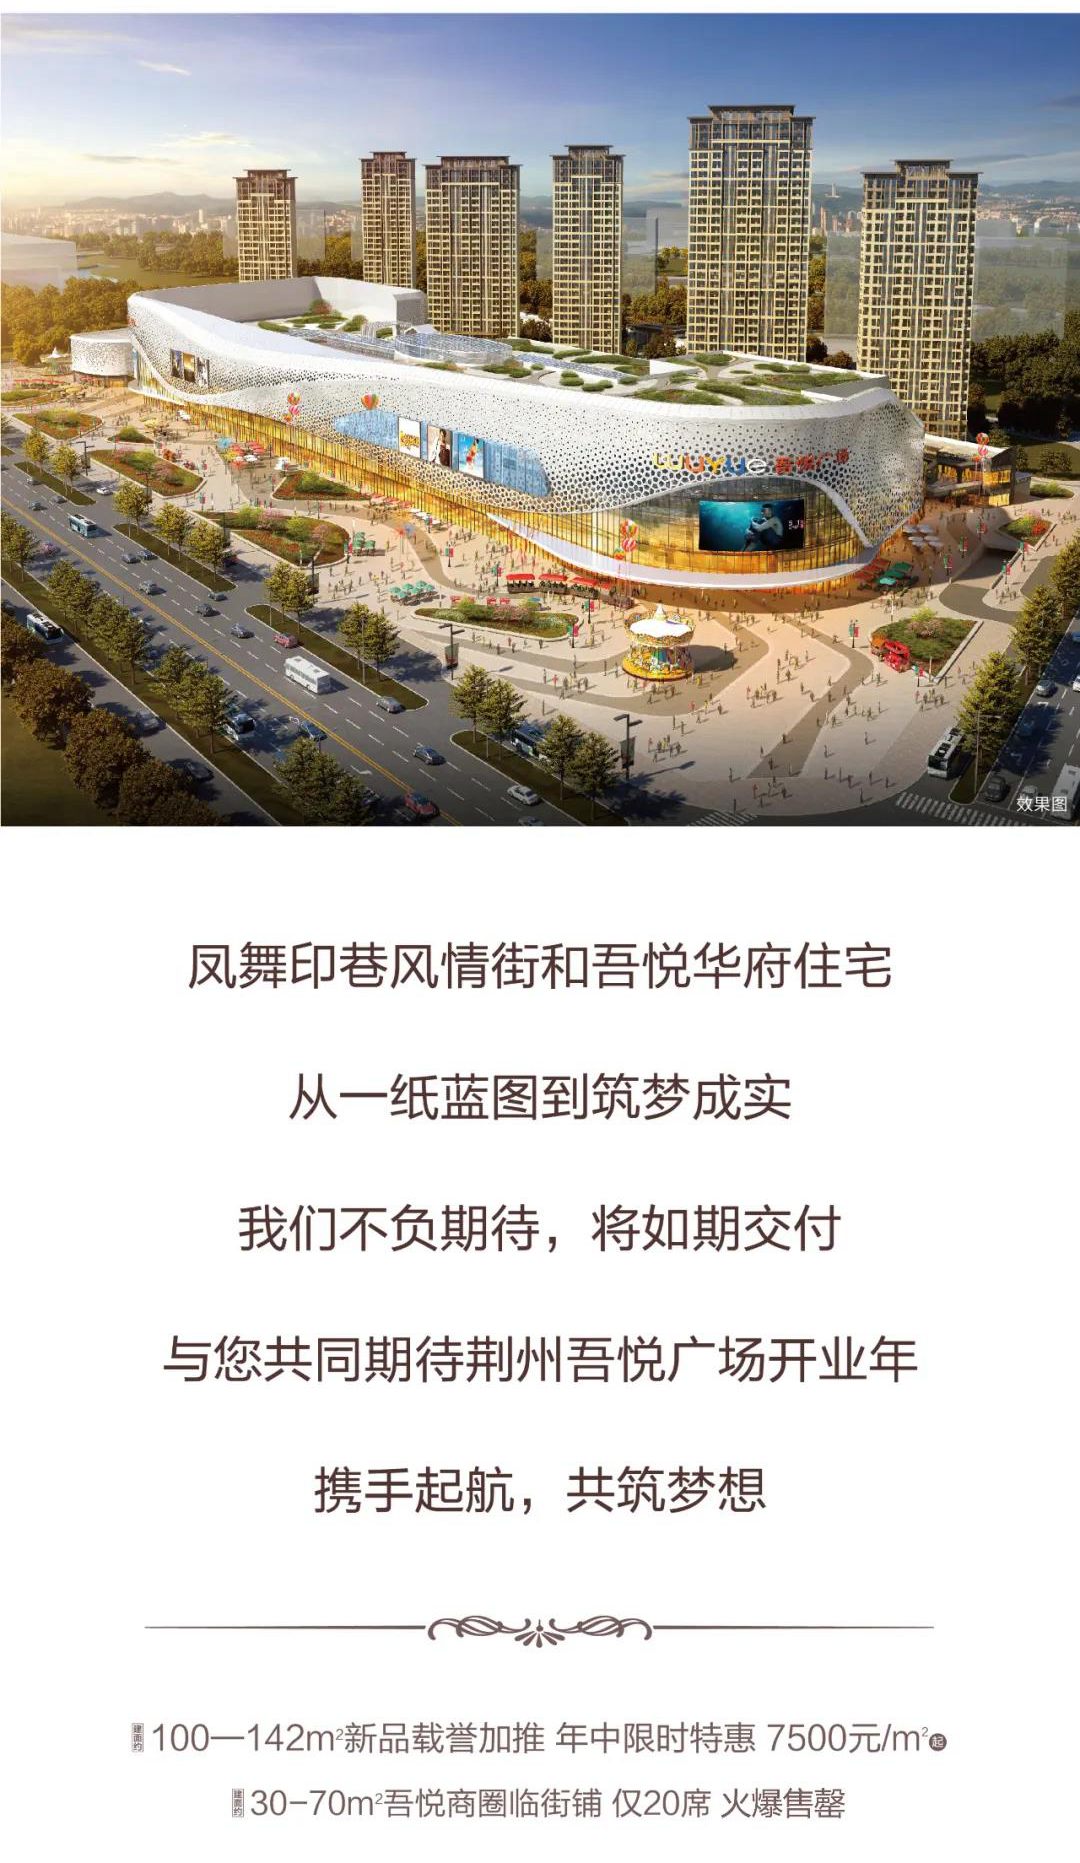 荆州吾悦广场 |六月项目进度 住宅主体完工 大商业装修80%